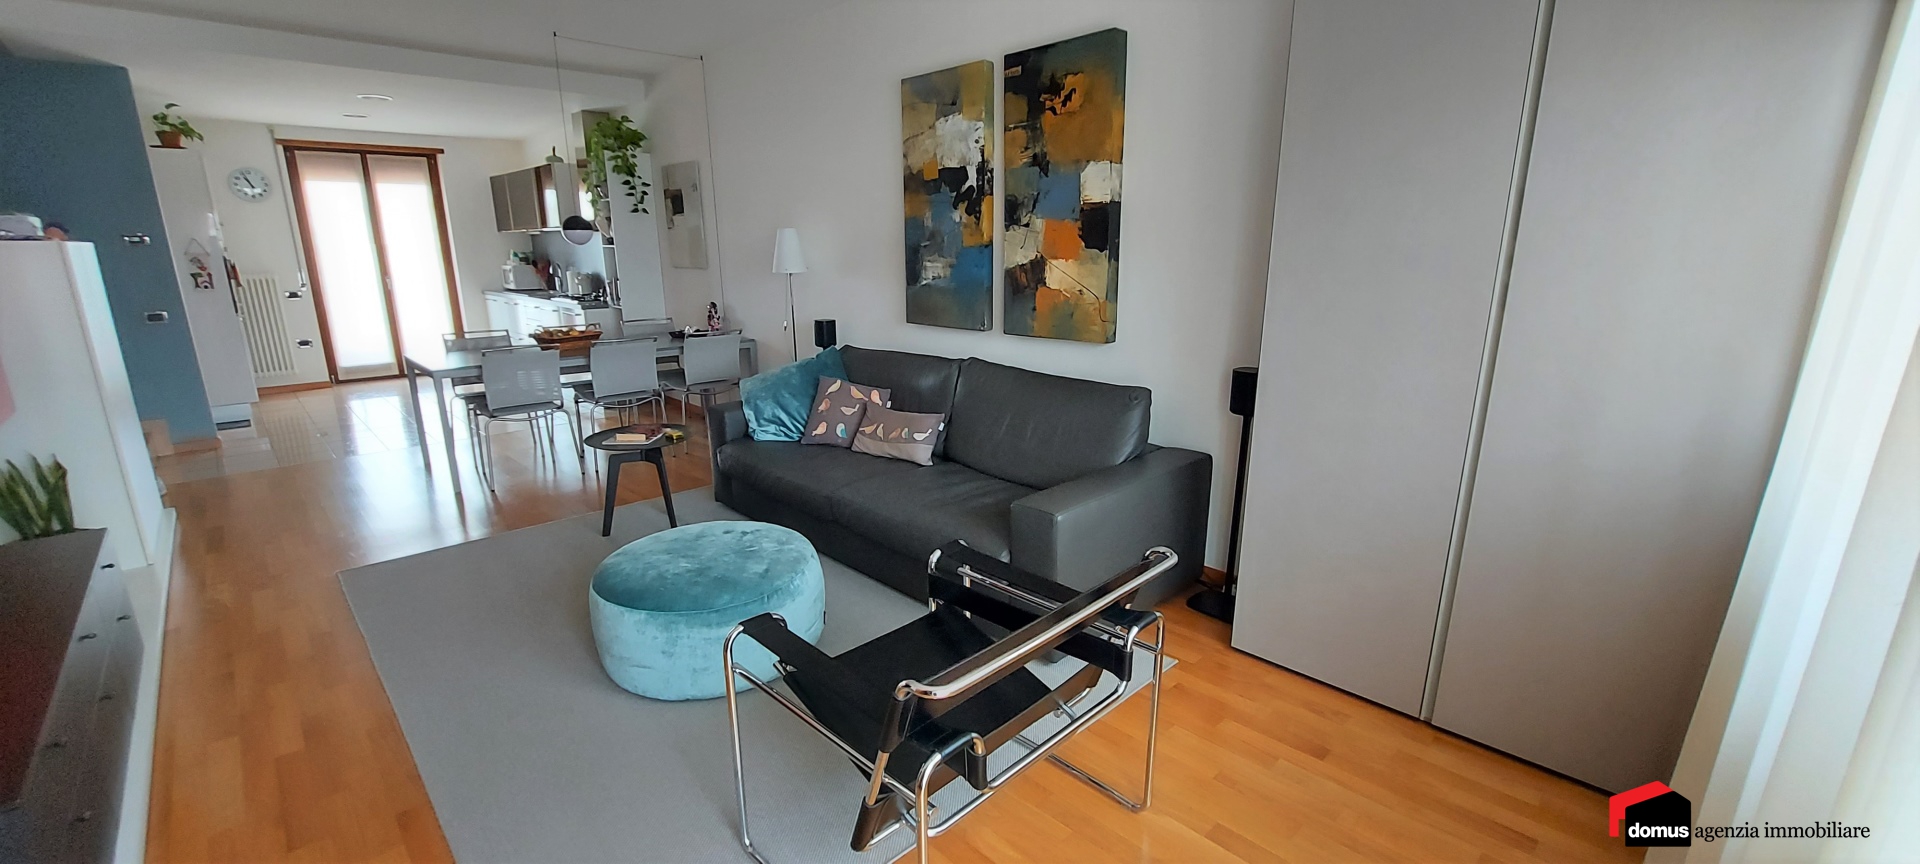 Appartamento in vendita a Thiene, 6 locali, prezzo € 248.000 | PortaleAgenzieImmobiliari.it